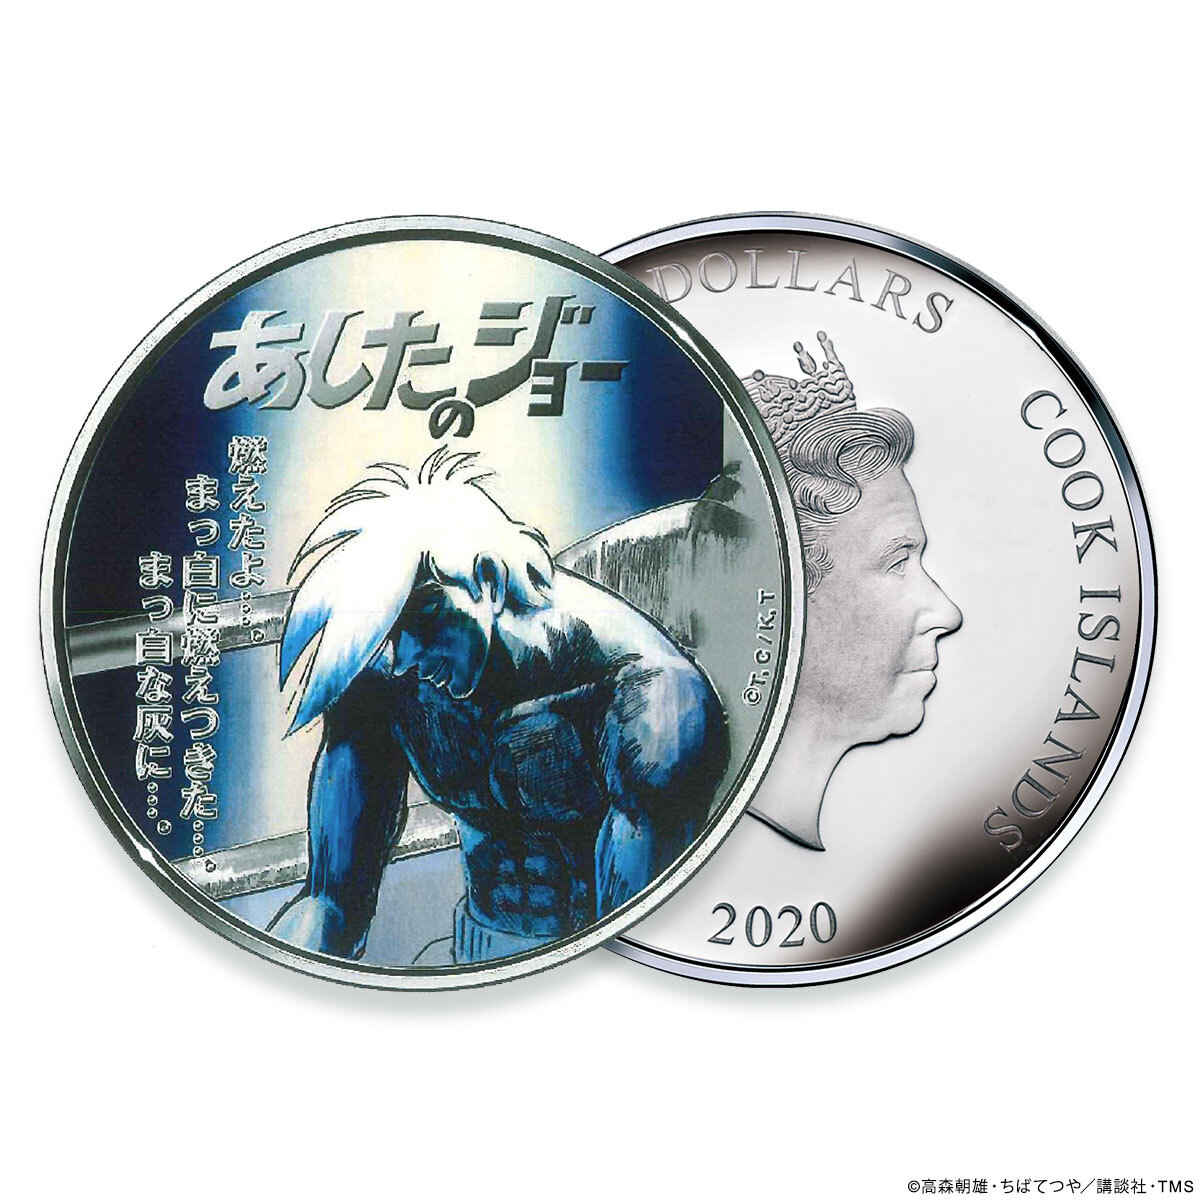 あしたのジョー』 アニメ公開50周年を記念した純銀製カラーコインが